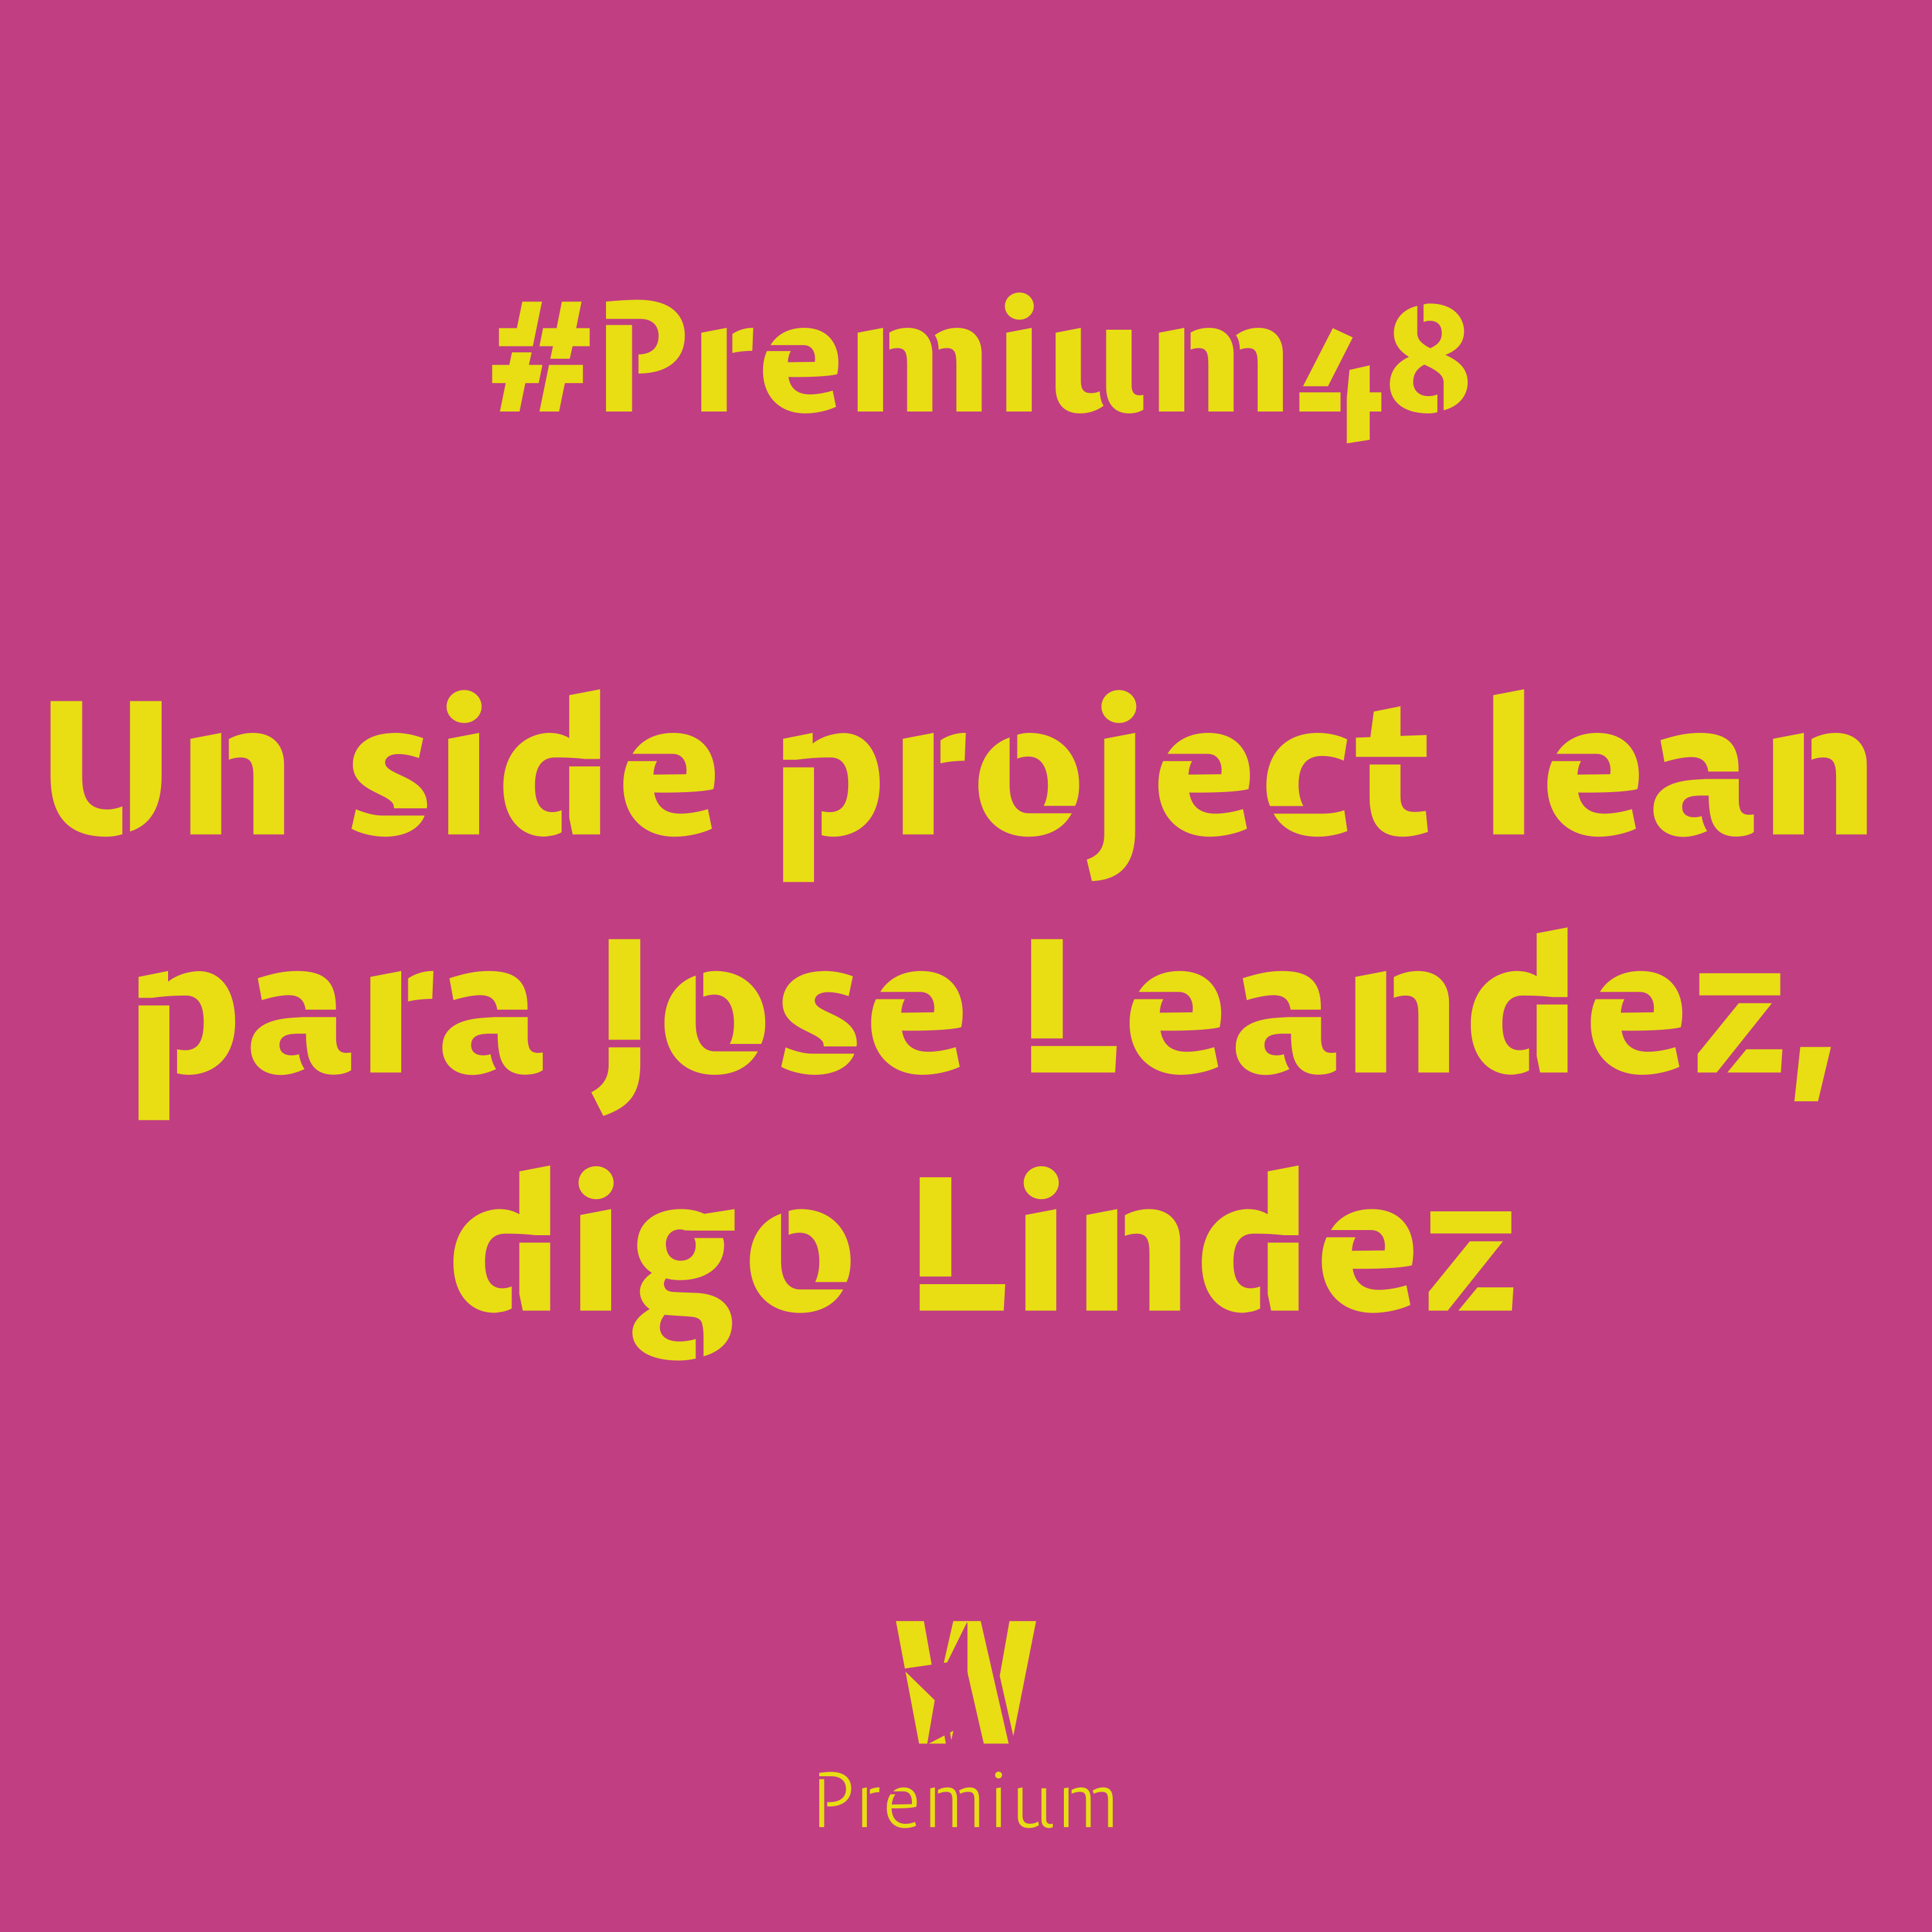 #Premium48 - Un side project lean para Jose Leandez, digo Lindez